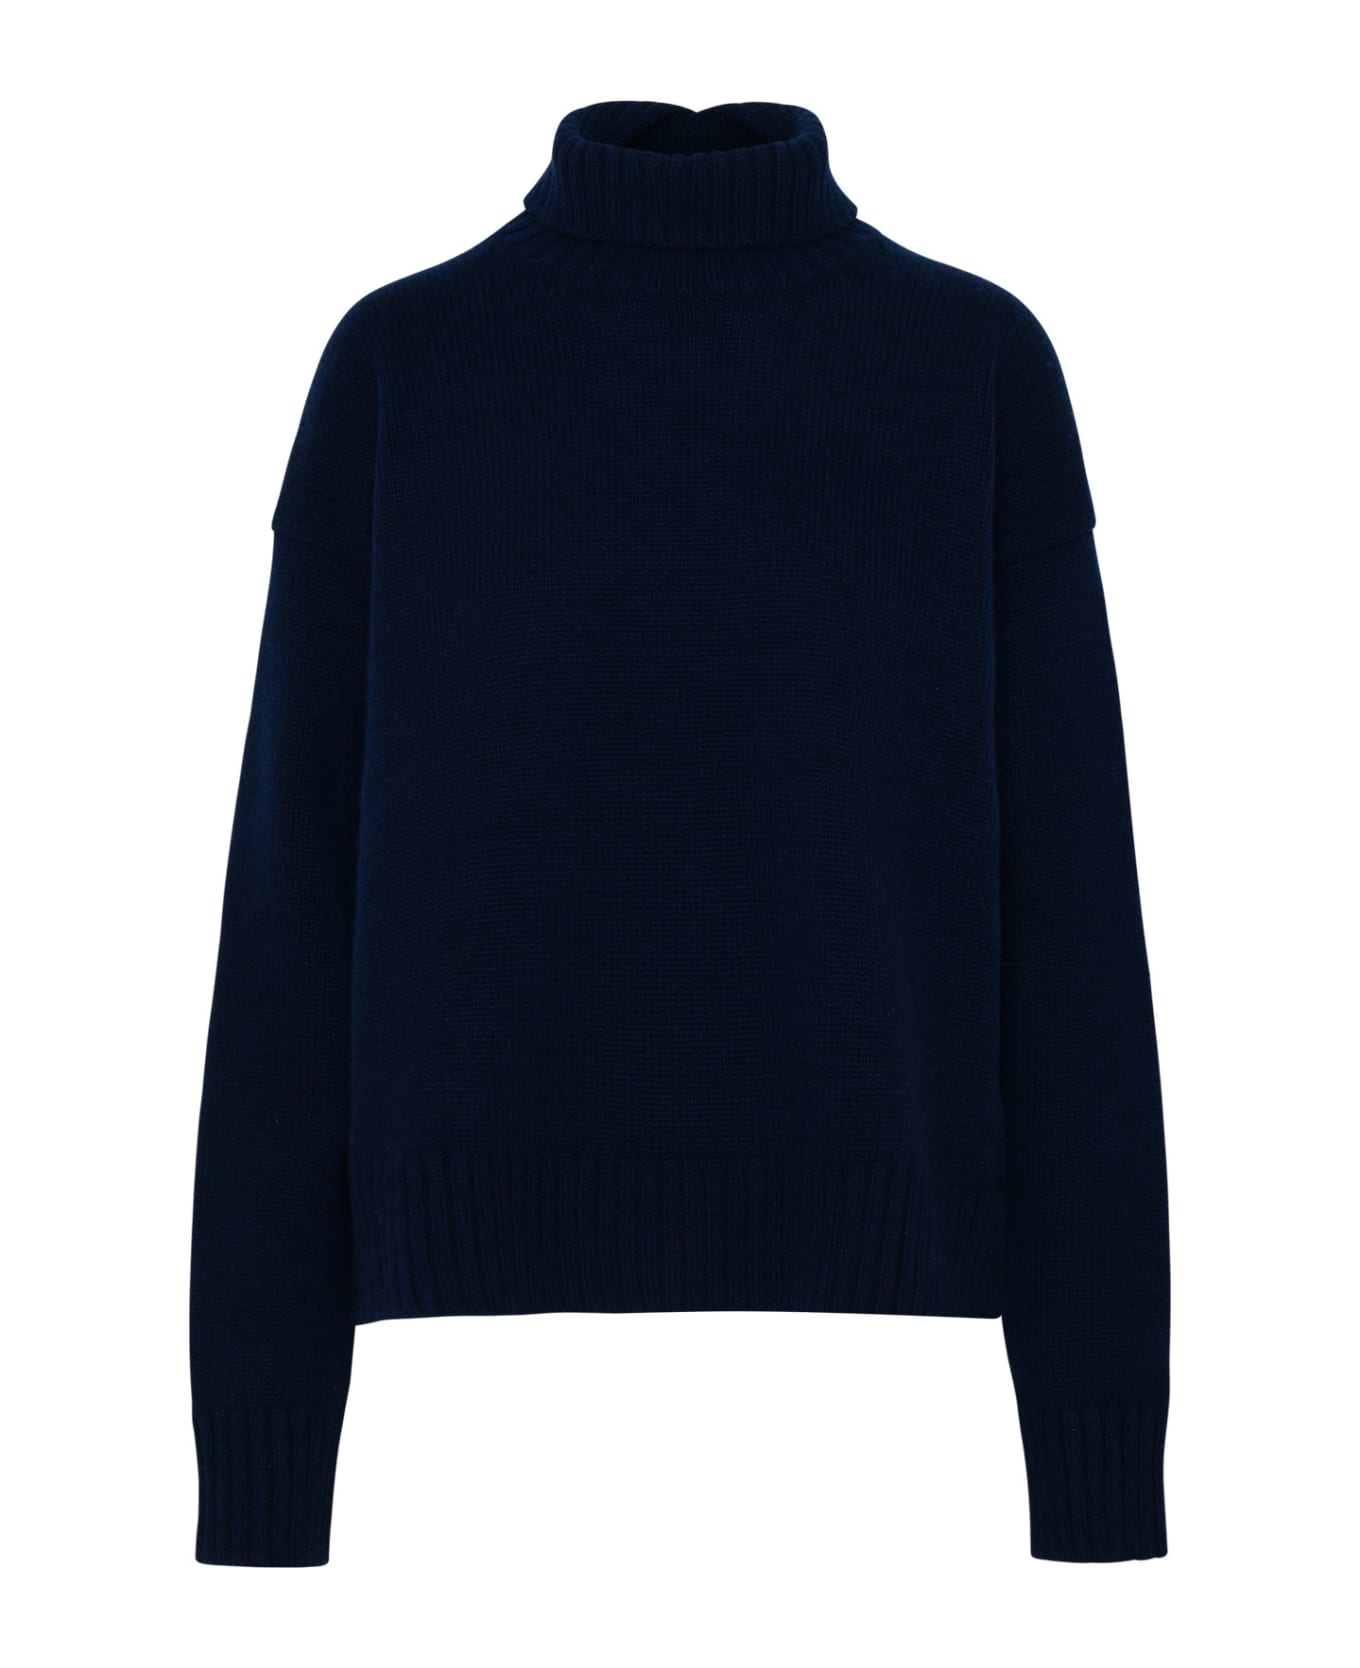 Jil Sander Sweater In Navy Cashmere Blend - Blue